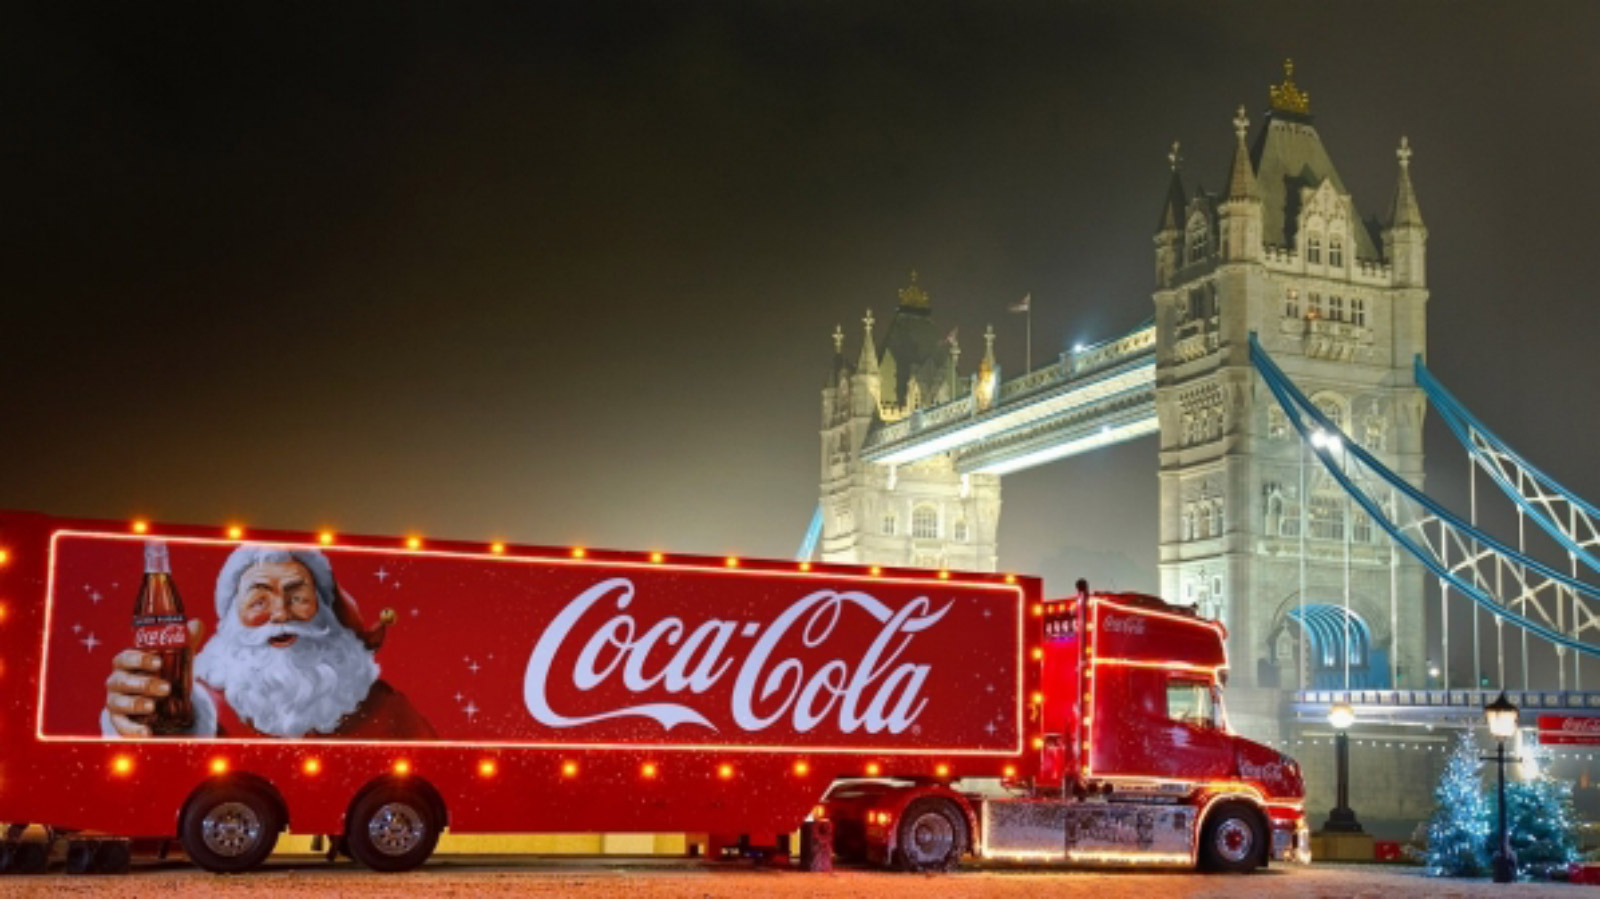 Ciężarówka COCA-COLI ruszyła - święta w reklamie oficjalnie rozpoczęte Kampania mediarun coca cola ciezarowka 2019